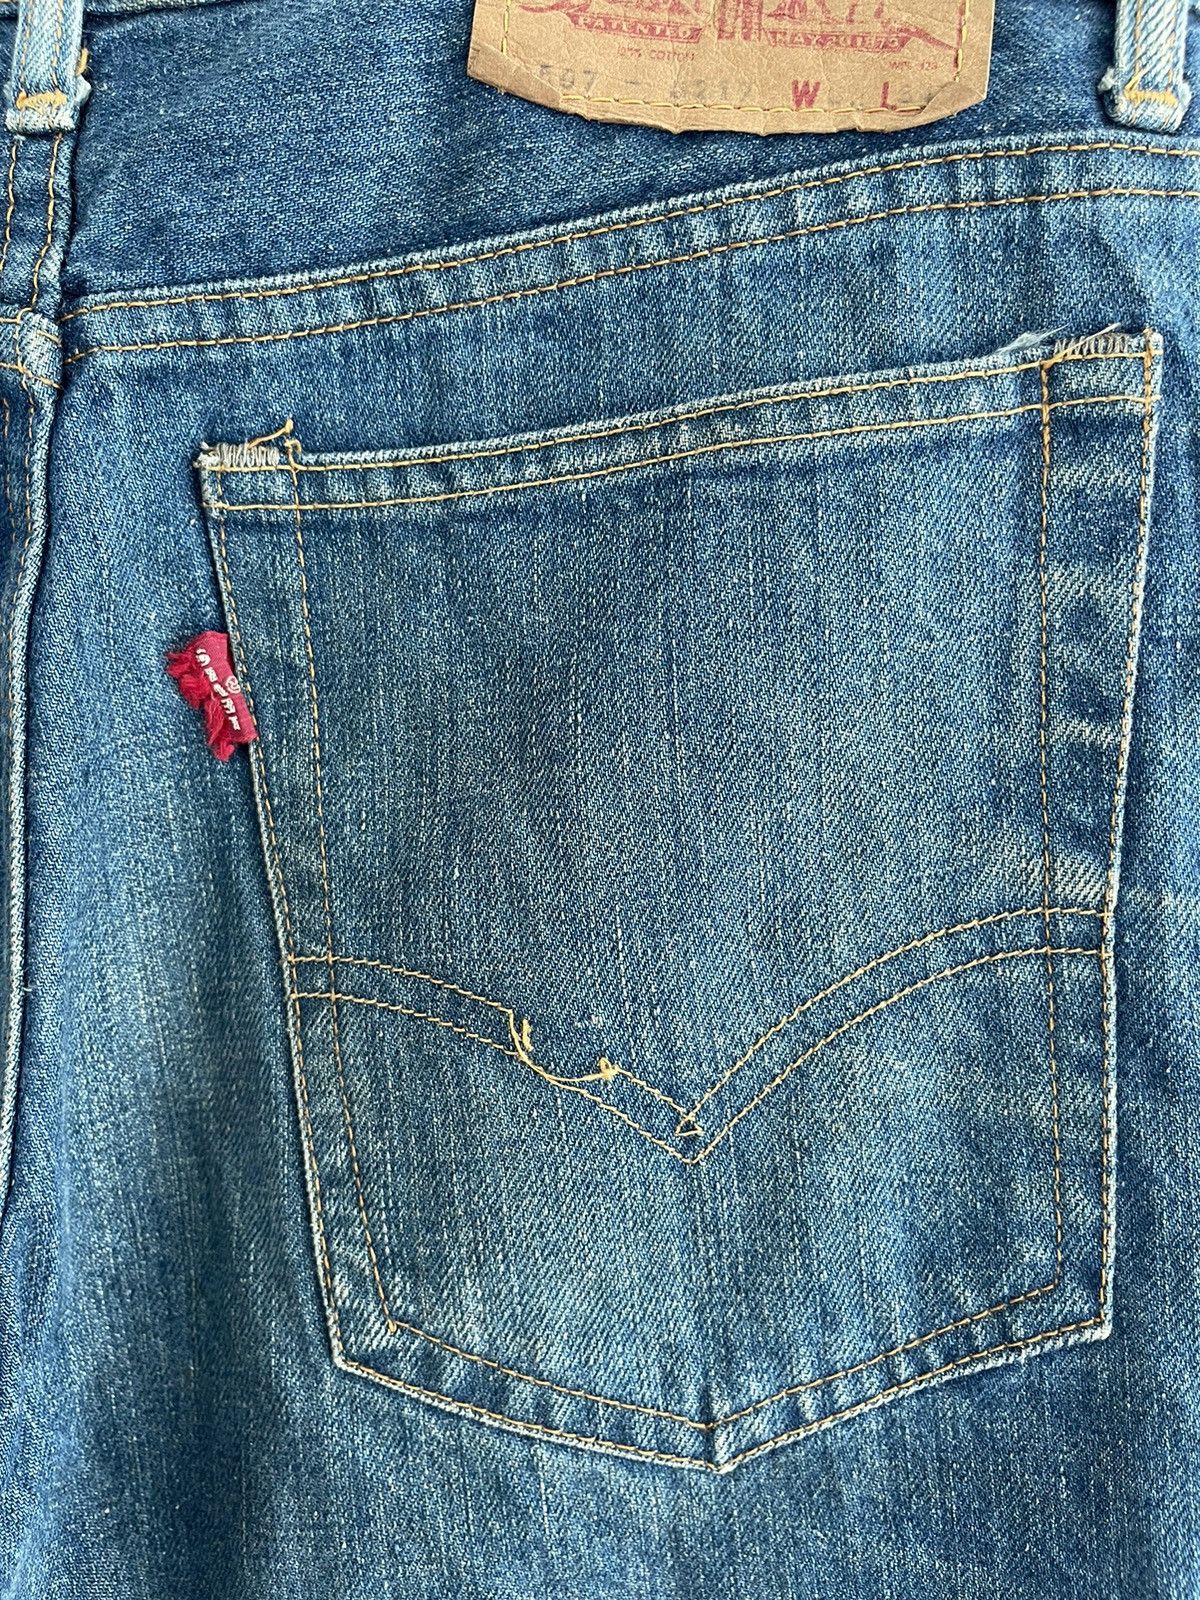 Vintage 70s Levis 507-0217 flare jeans - 7